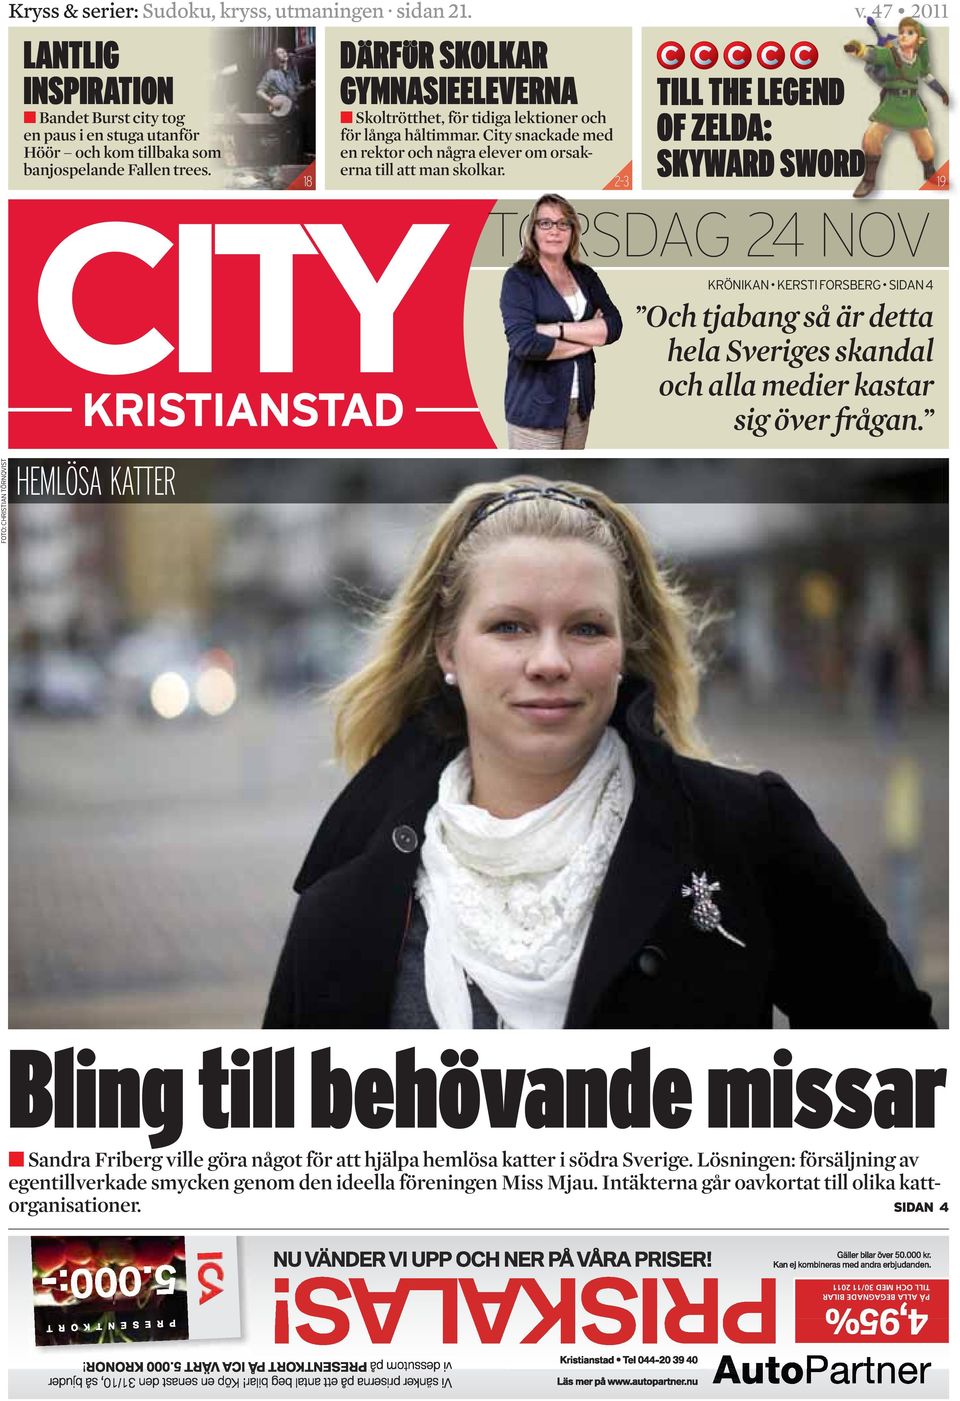 TORSDAG 24 NOV Och tjabang så är detta hela Sveriges skandal och alla medier kastar sig över frågan.